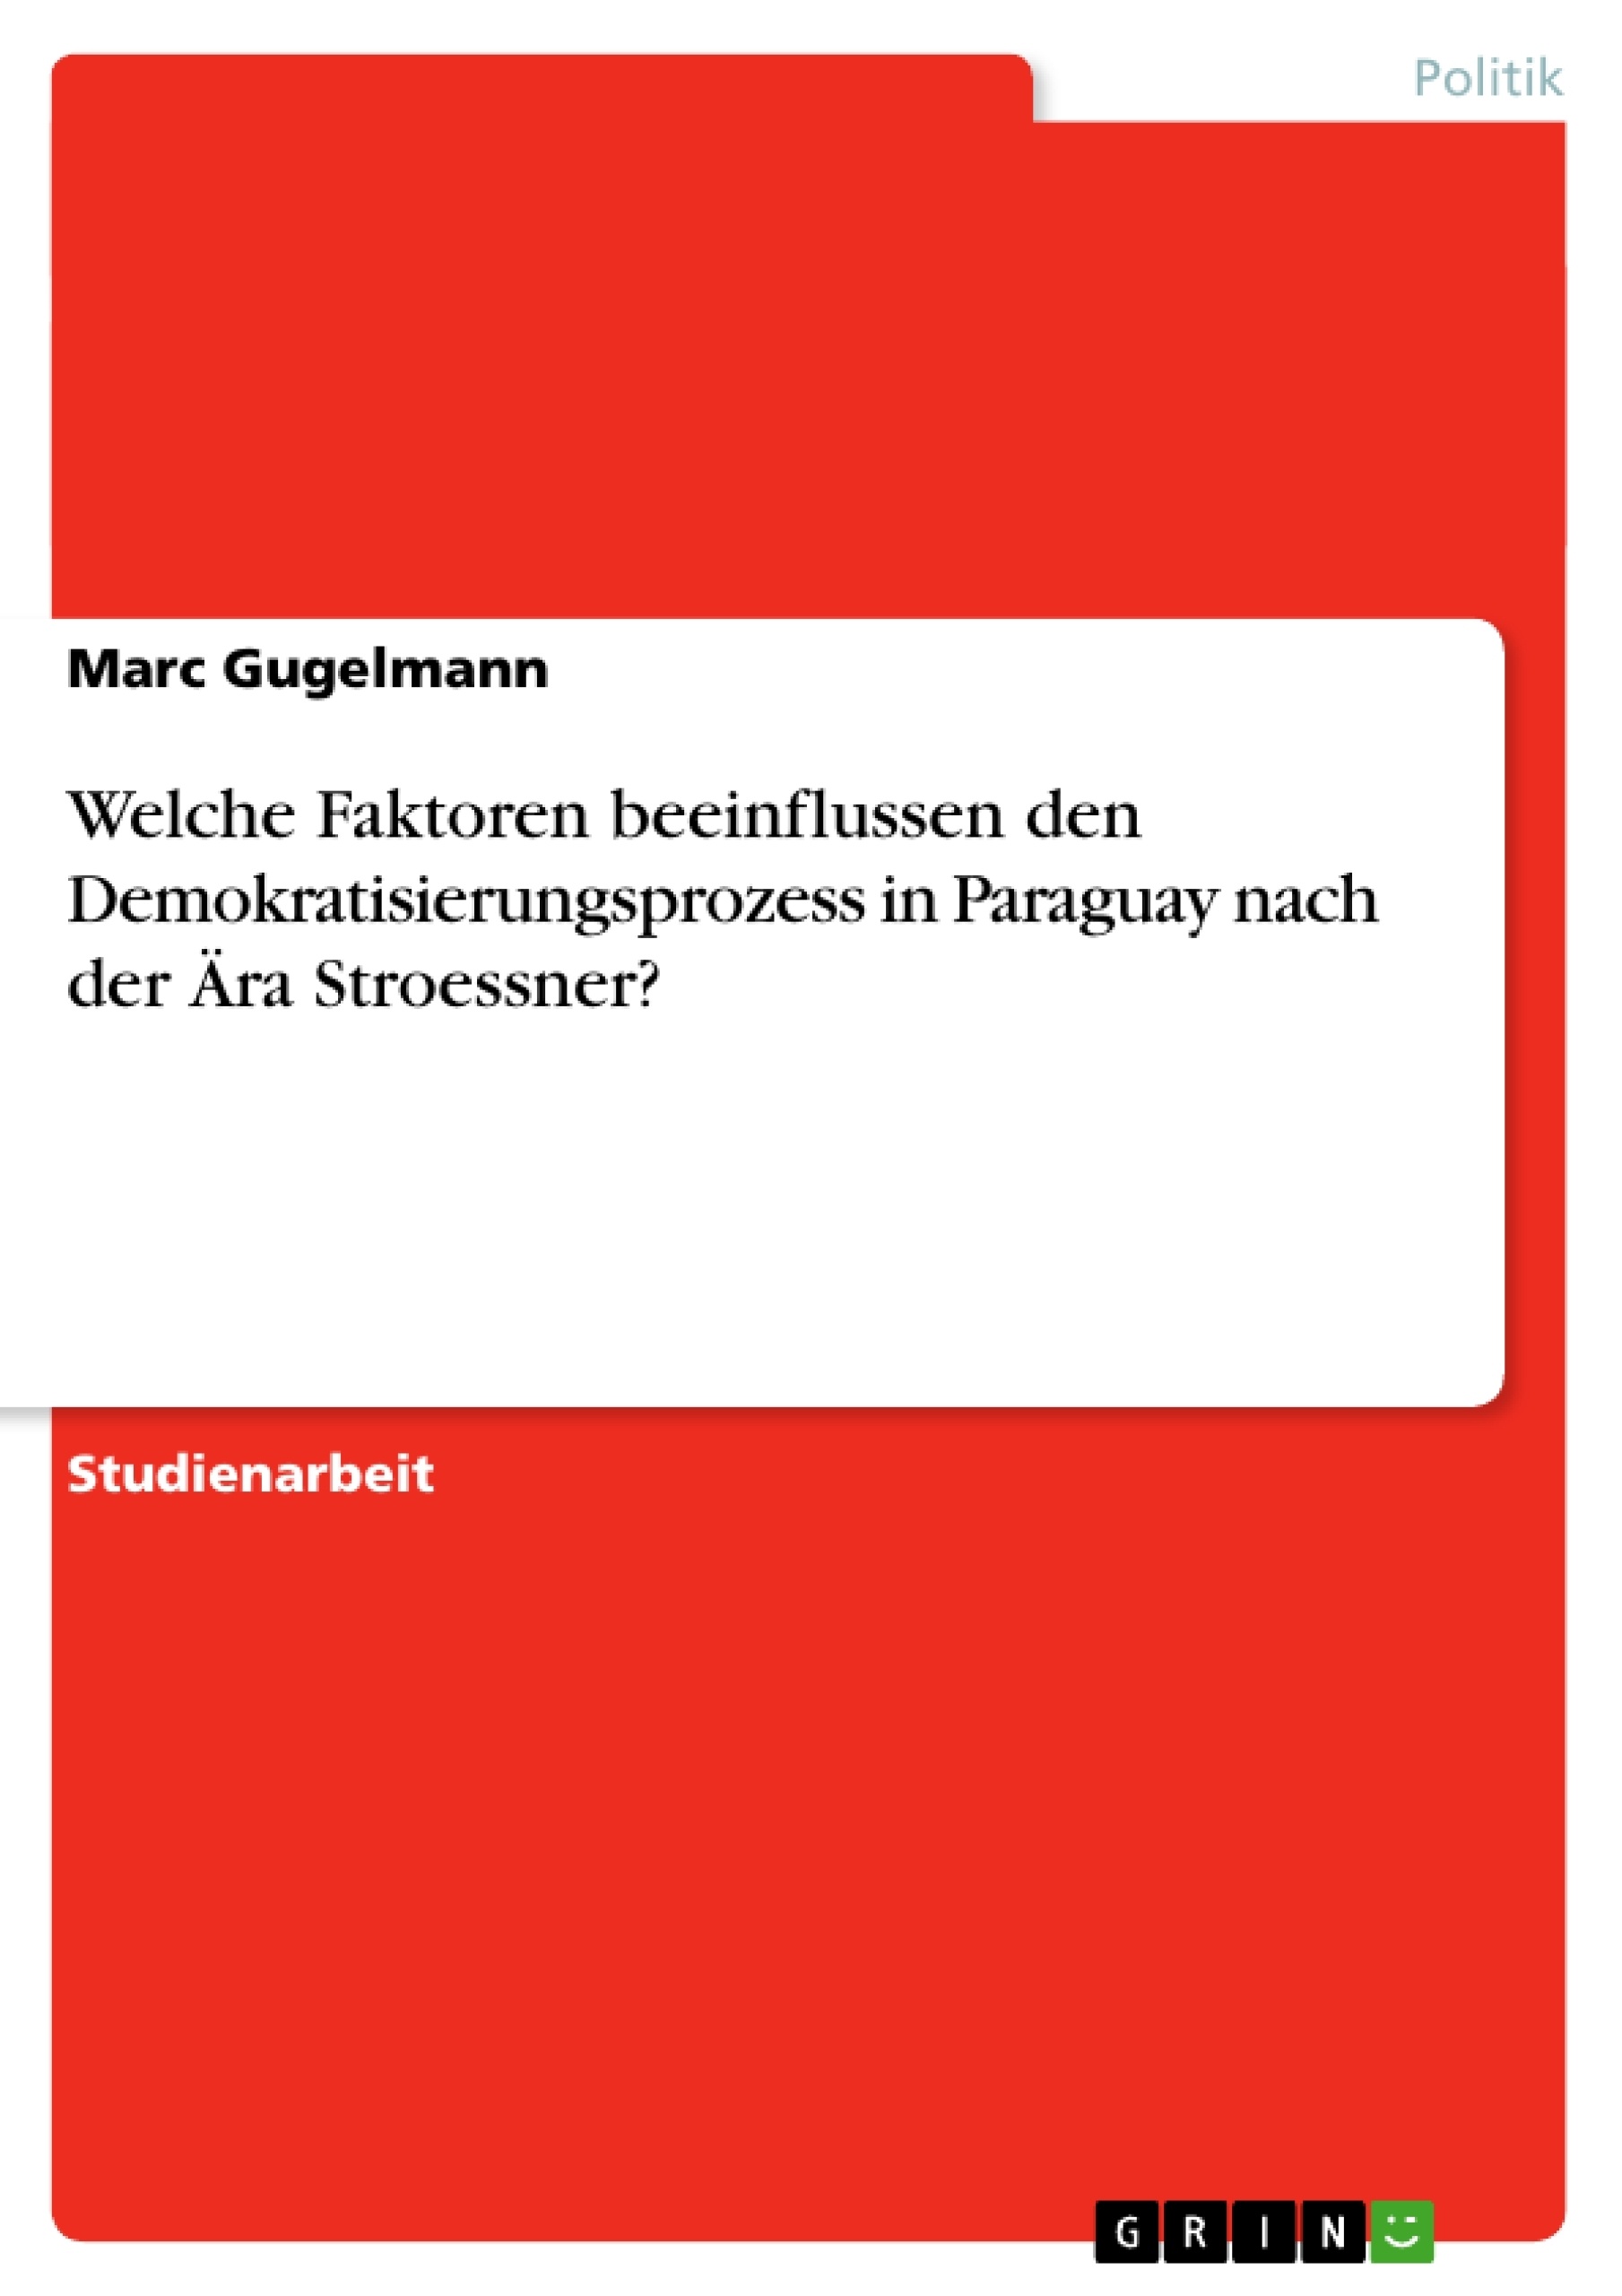 Title: Welche Faktoren beeinflussen den Demokratisierungsprozess in Paraguay nach der Ära Stroessner?